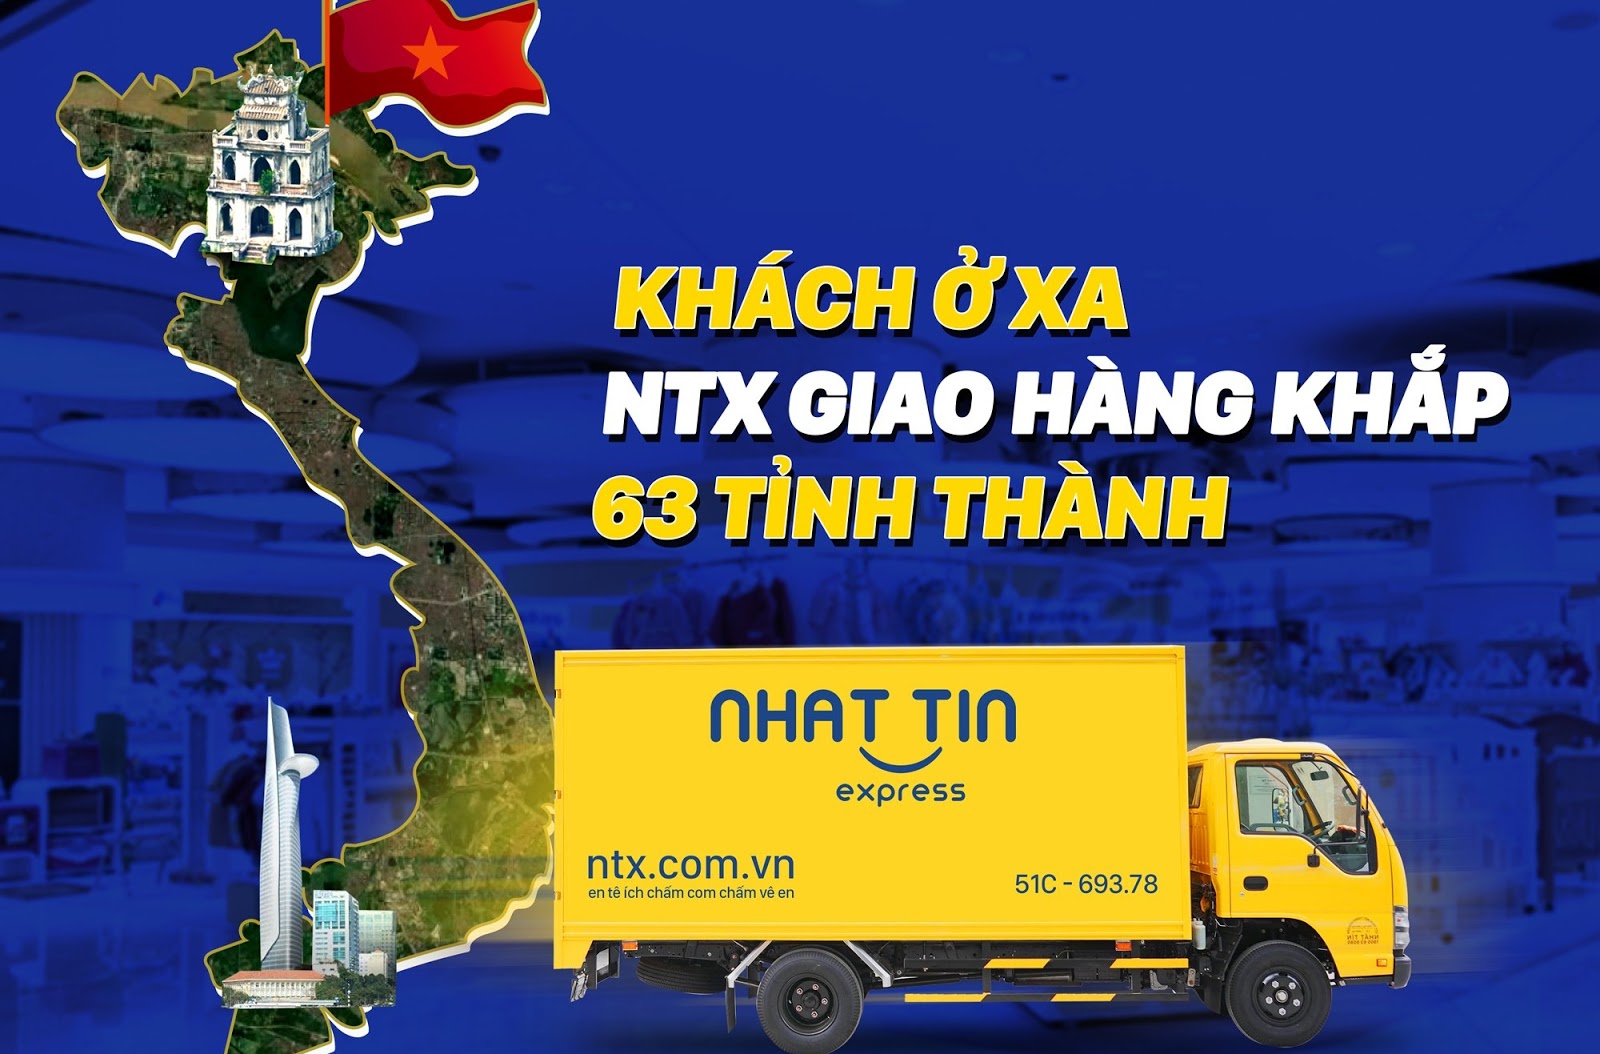 chuyển phát nhanh tại nhà với NTX - Nhất Tín Express Hà Nội, Sài Gòn